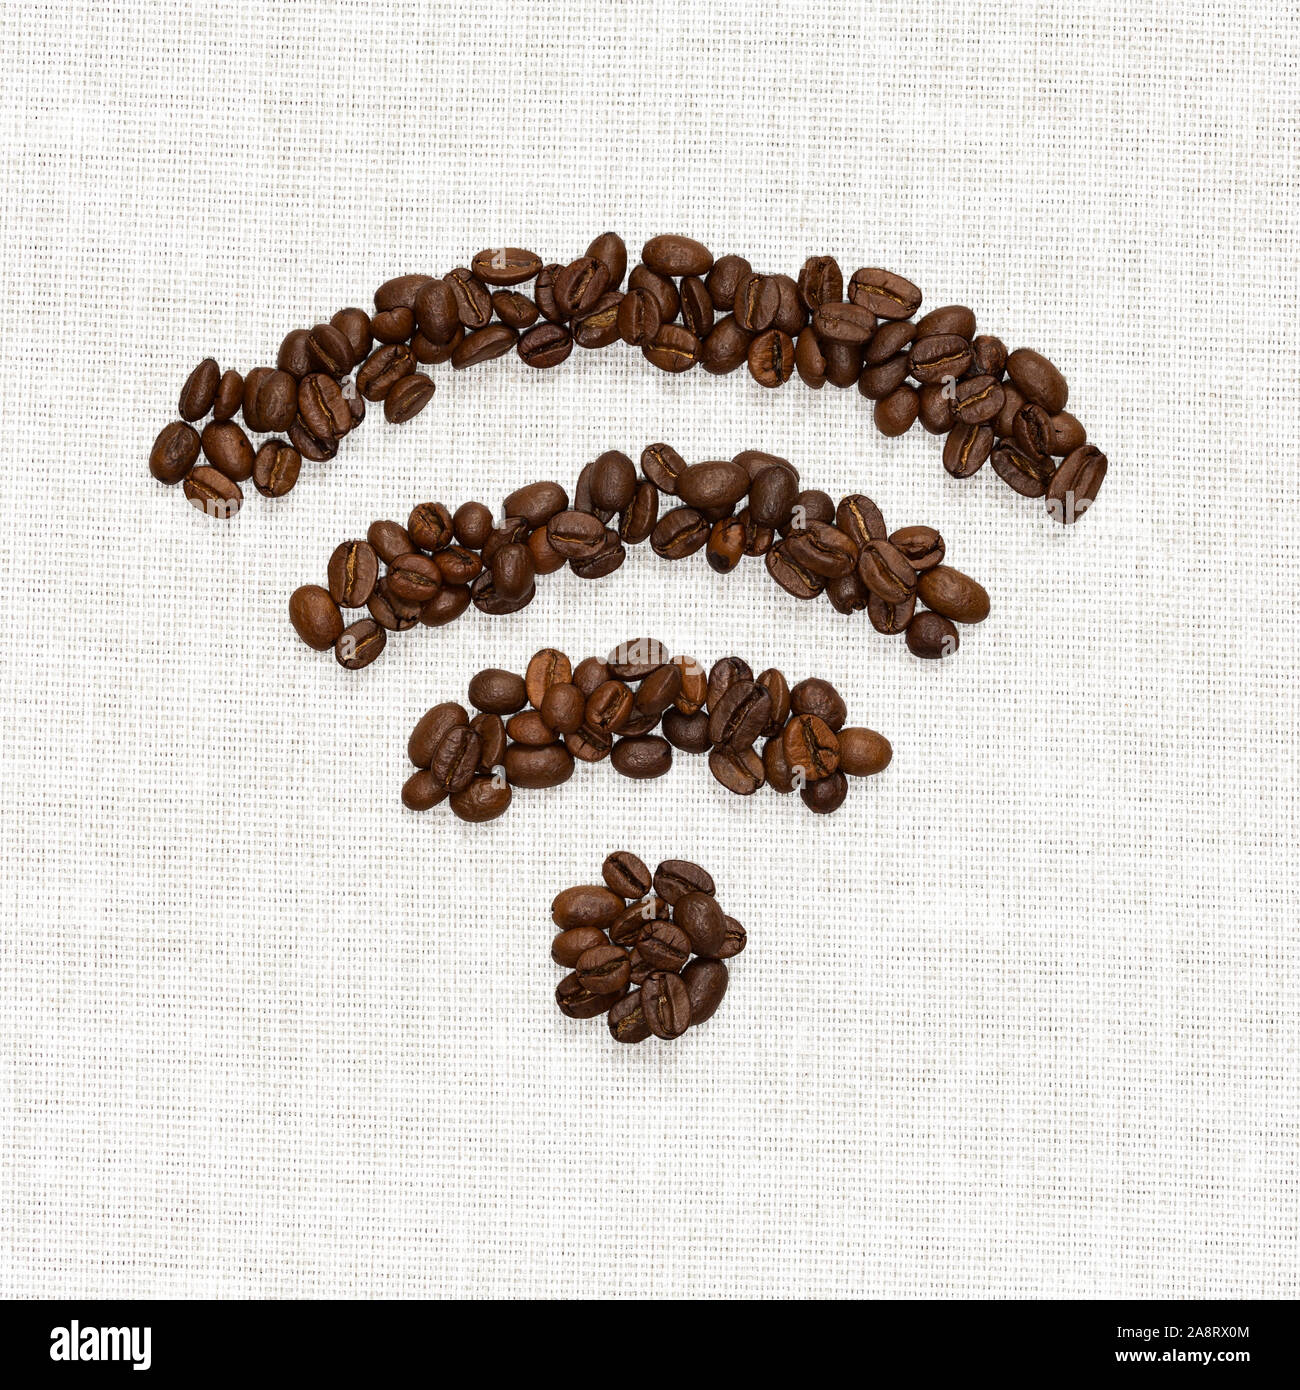 Symbole Wi-Fi repliés depuis les grains de café torréfiés sur la base de jute Banque D'Images